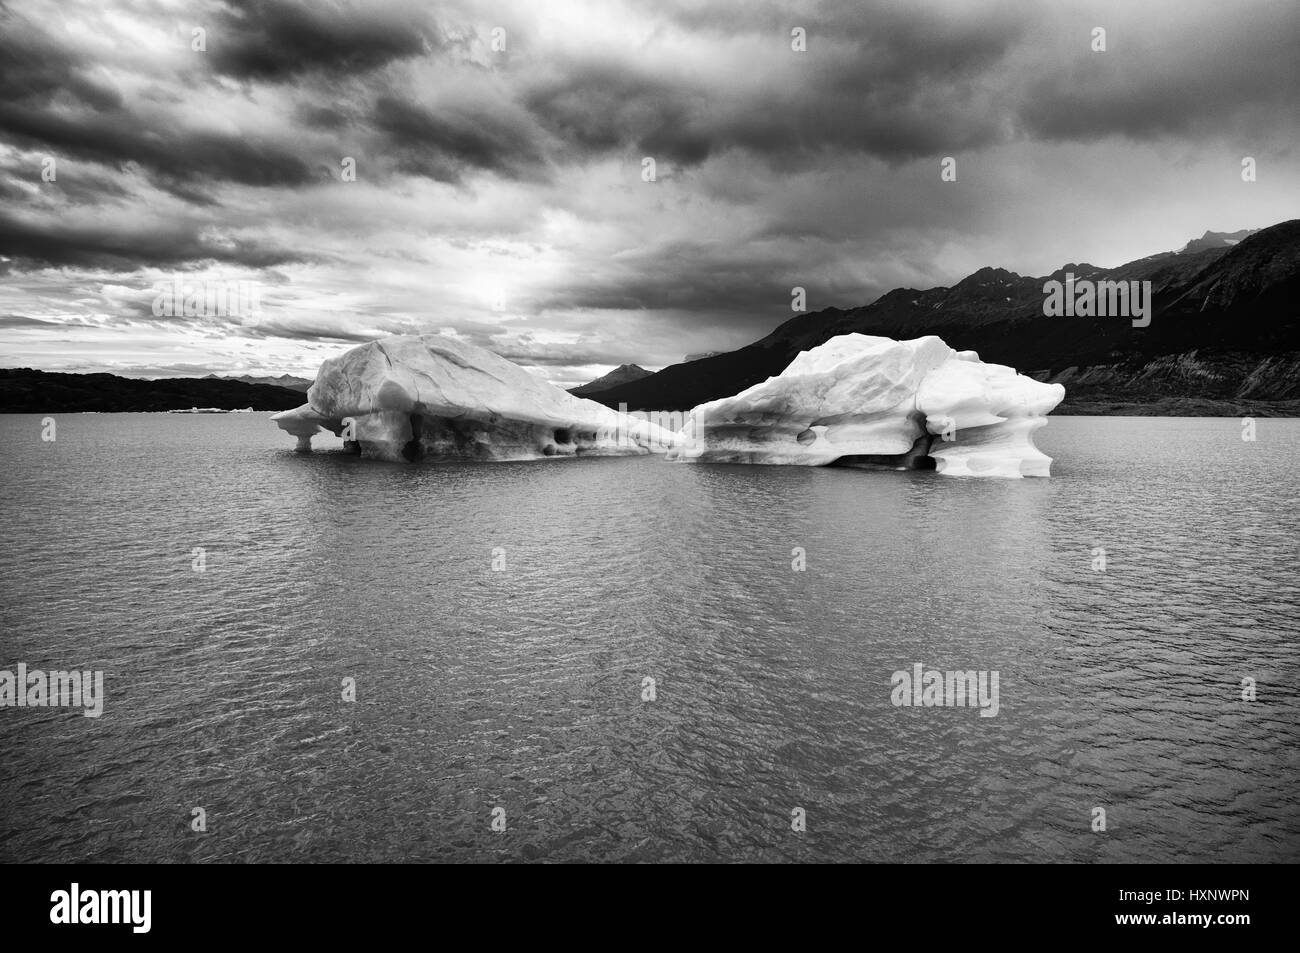 Iceberg floating in lago argentino (Argentina) Stock Photo